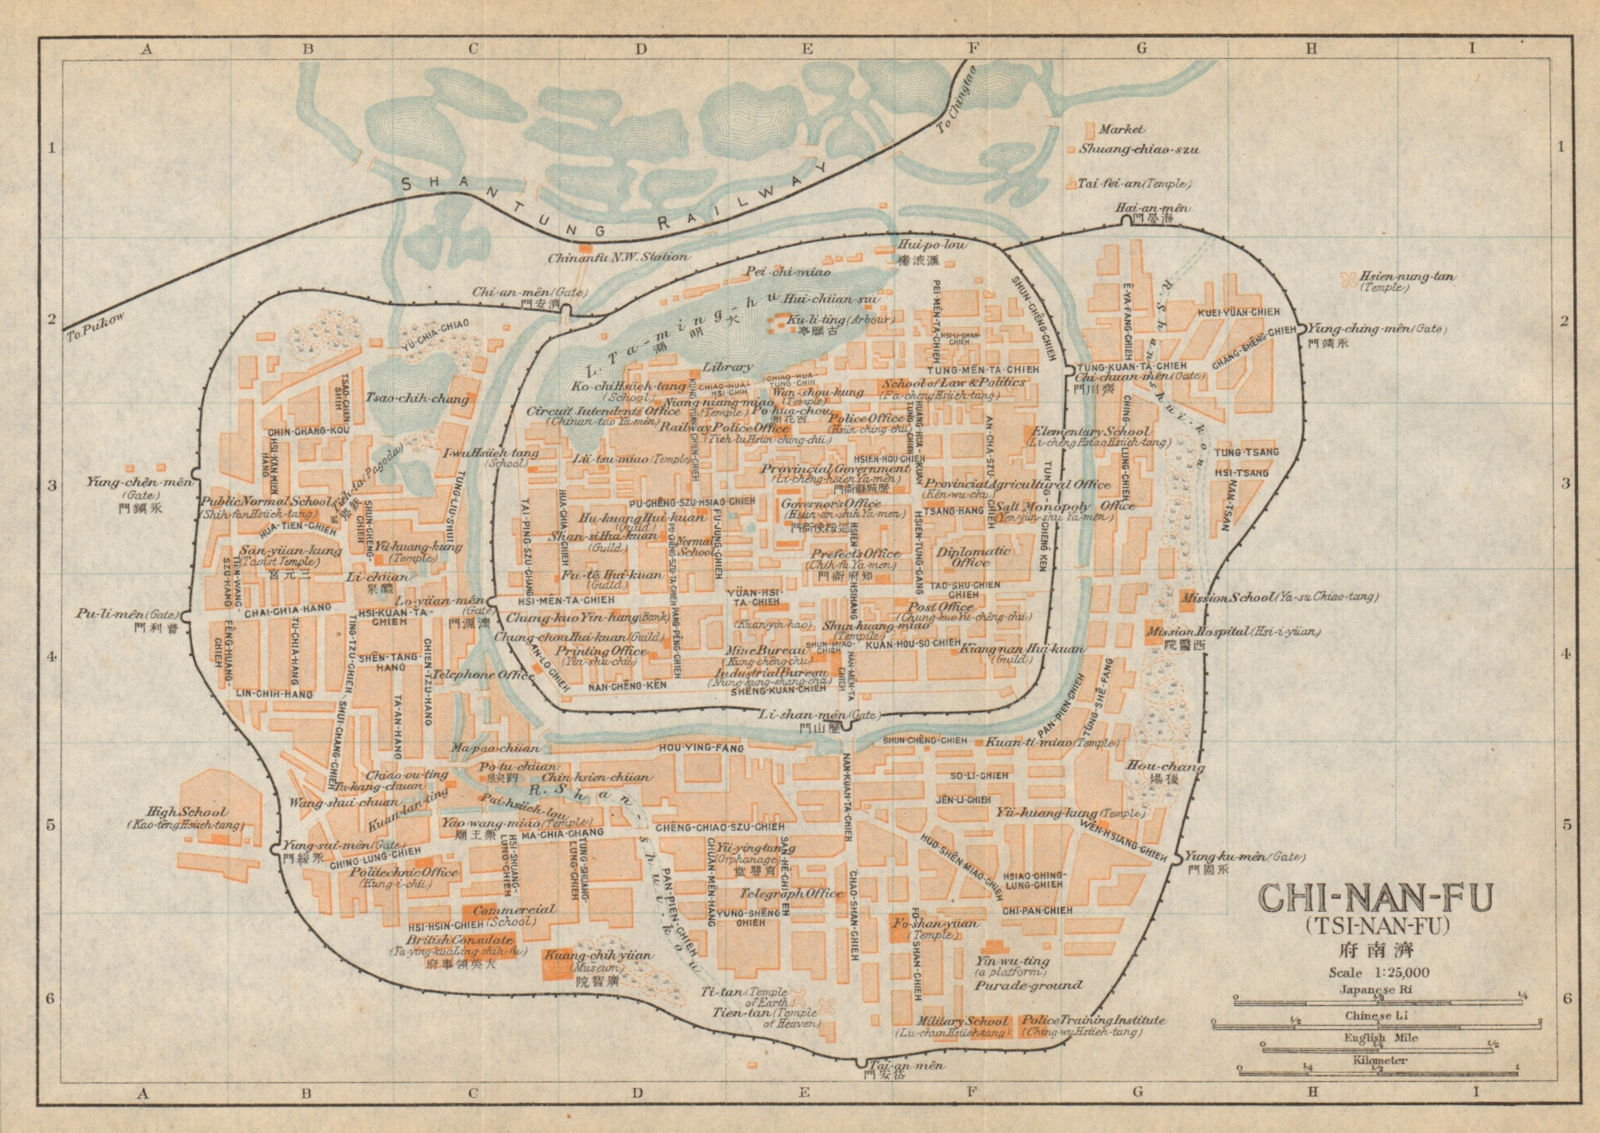 'Chi-nan-fu (Tsi-nan-fu)'. Jinan antique town city plan. China 1915 old map